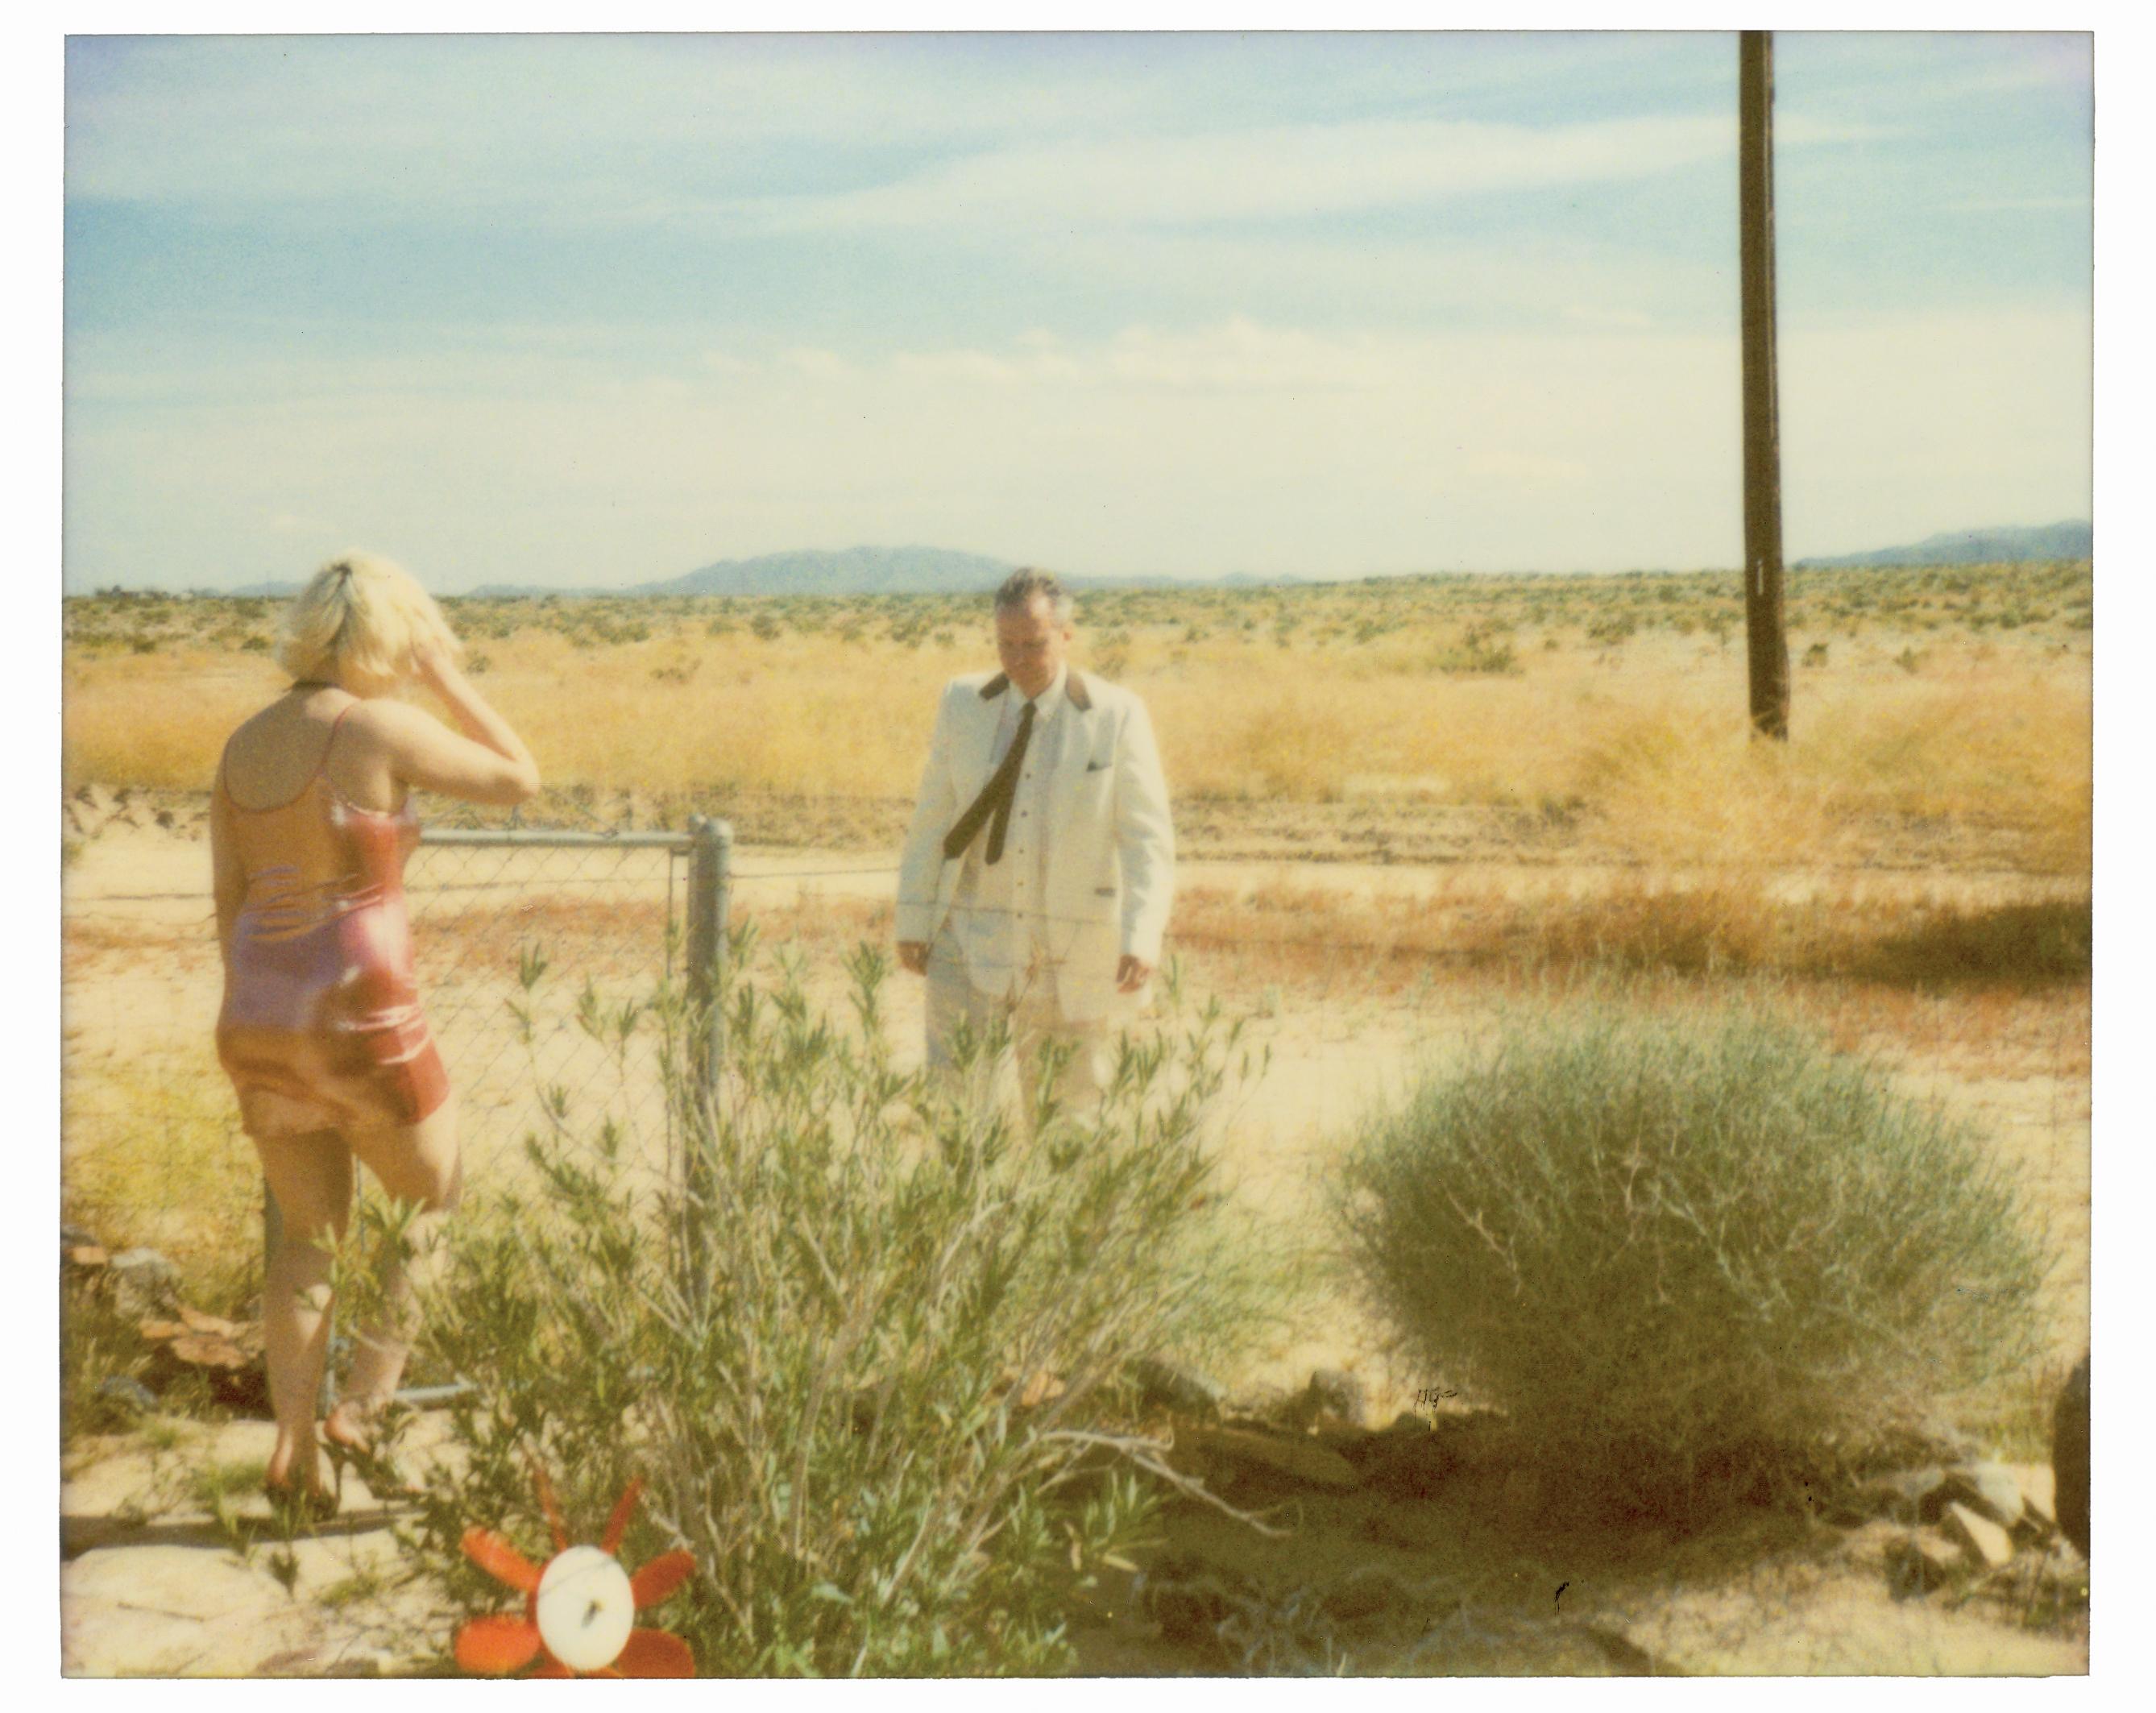 Stefanie Schneider Landscape Photograph - Wonder Valley (29 Palms, CA) - analog, mounted, hand-print, Polaroid, 21st 